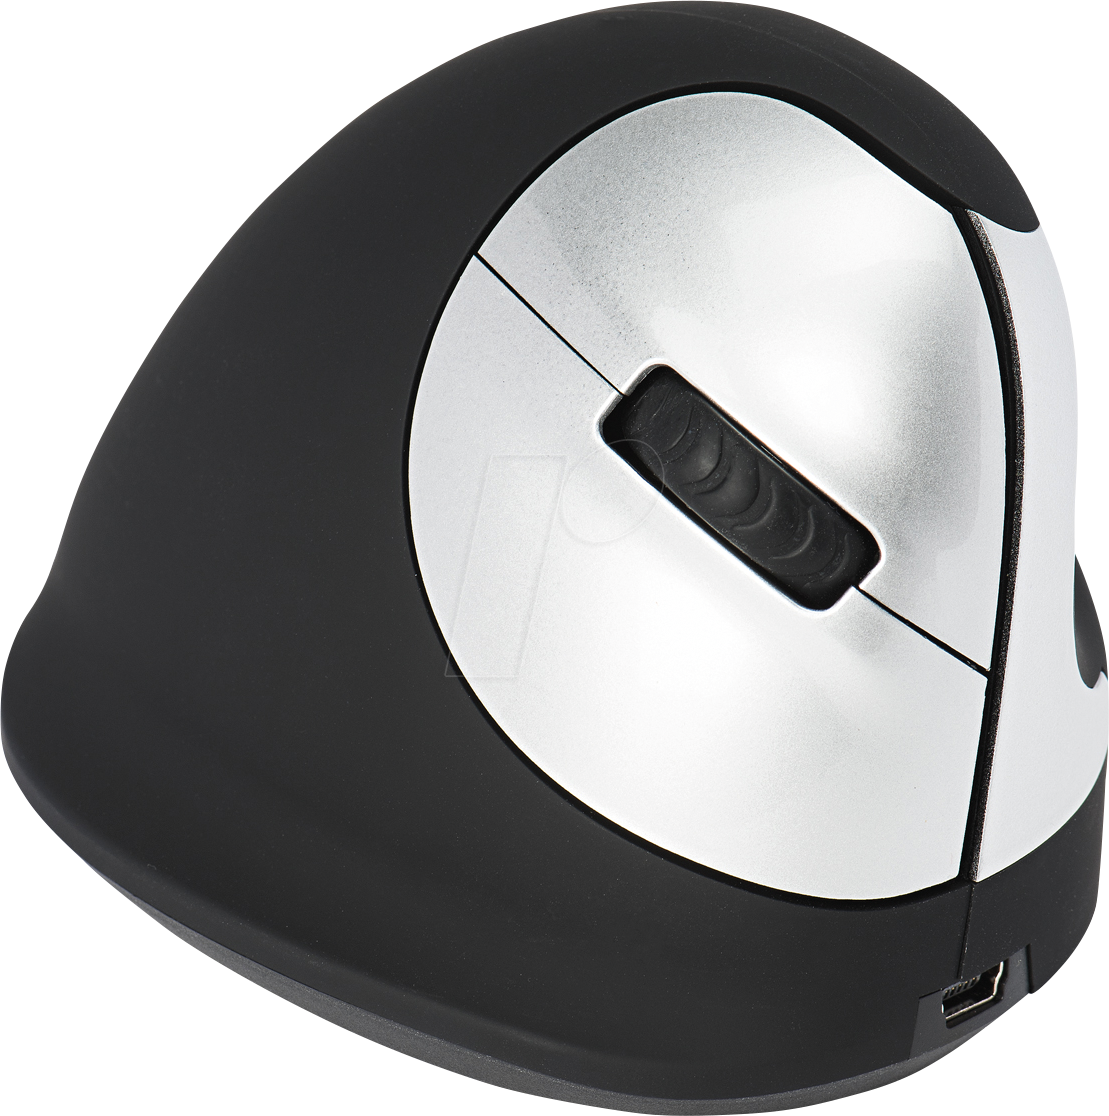 R-GO HEWL - Maus (Mouse), Bluetooth, vertikal, Rechtshänder, M von R-Go Tools